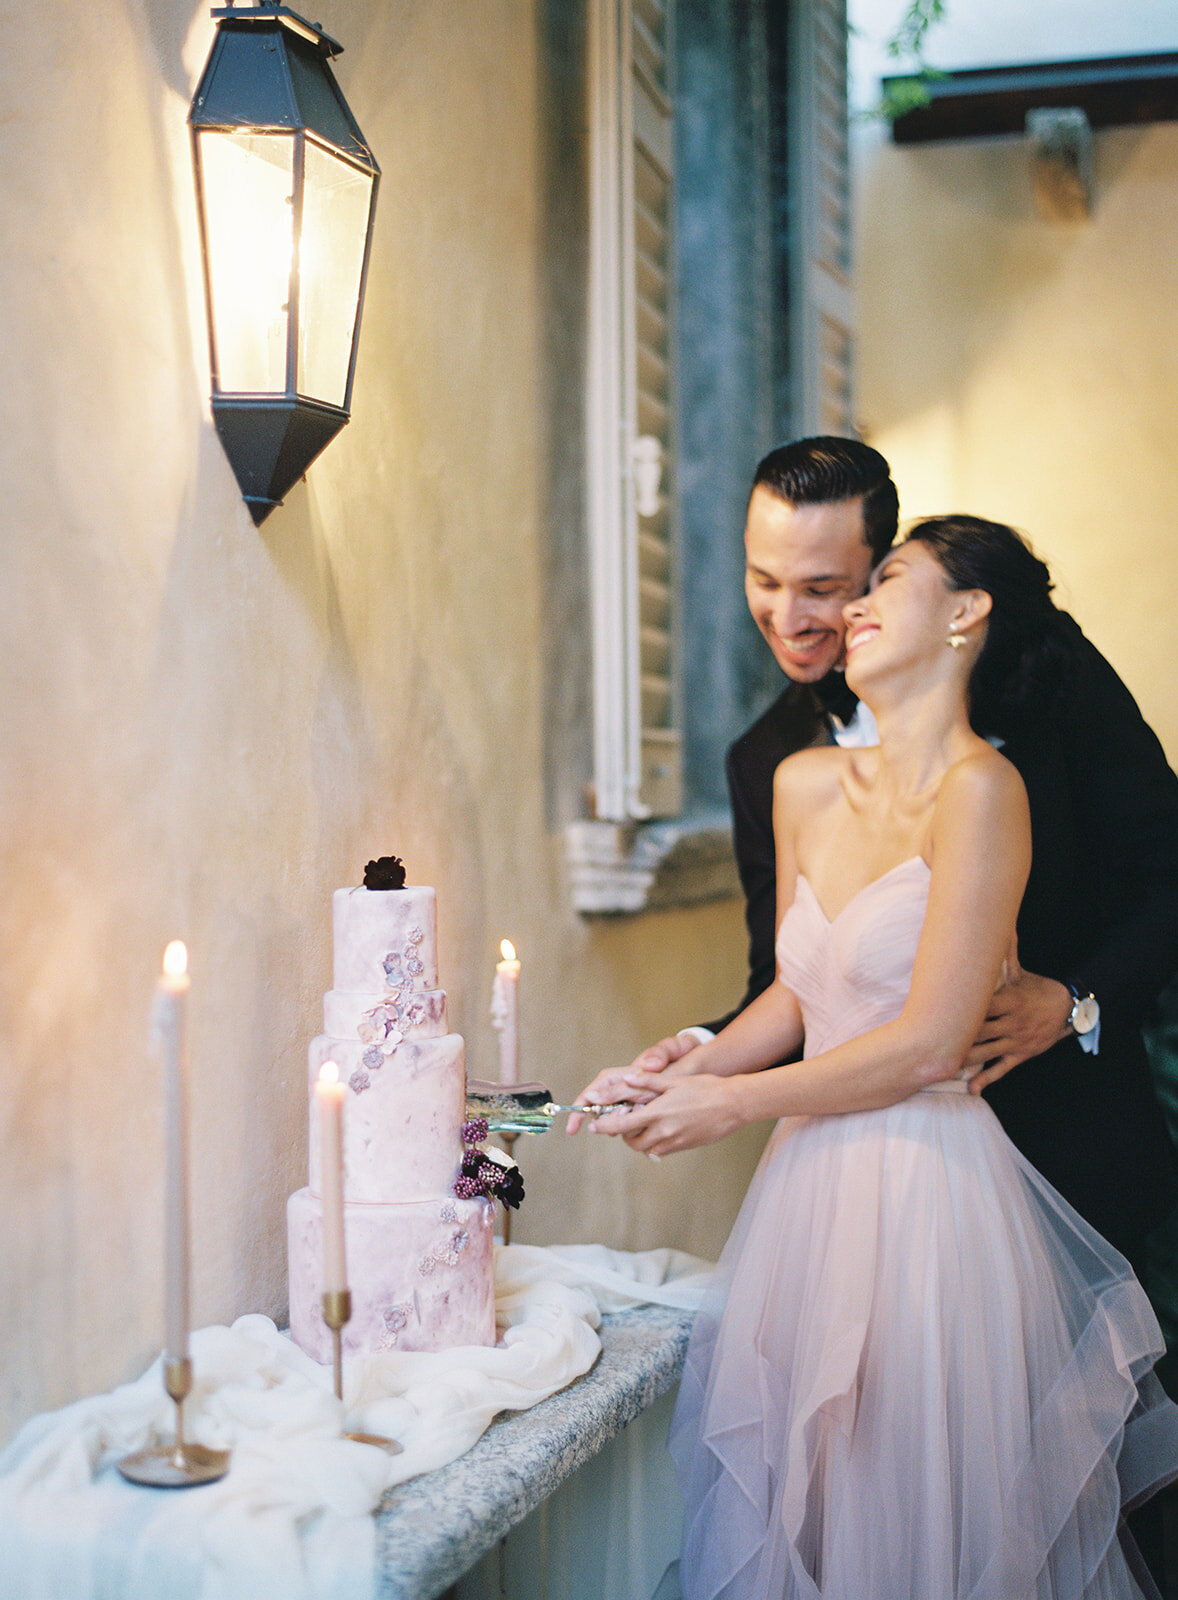 newlyweds cut the cake at villa balbiano